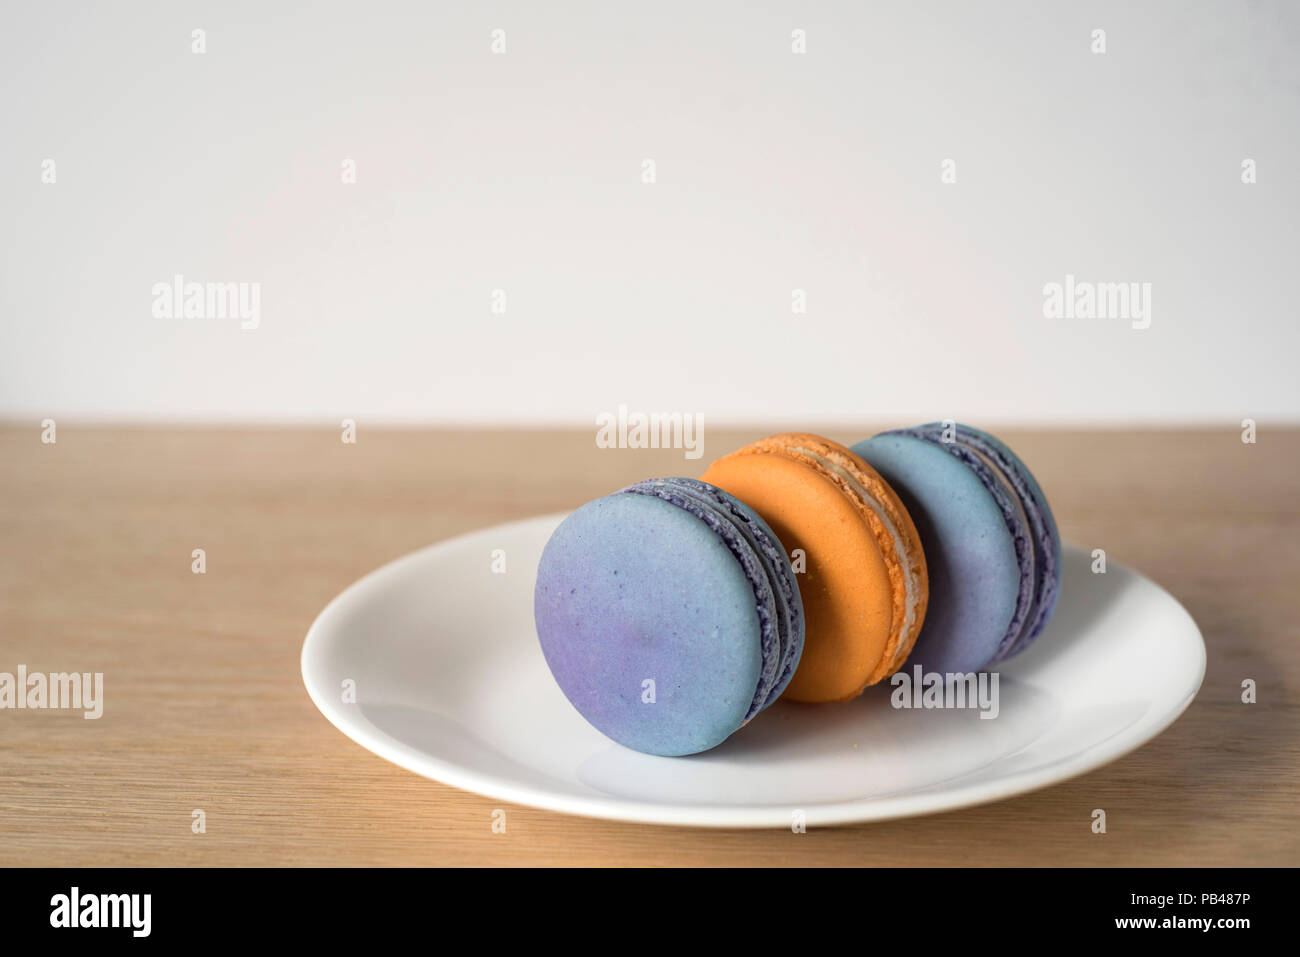 Trois Macarons Orange et bleu assis sur leurs côtés sur une plaque Banque D'Images